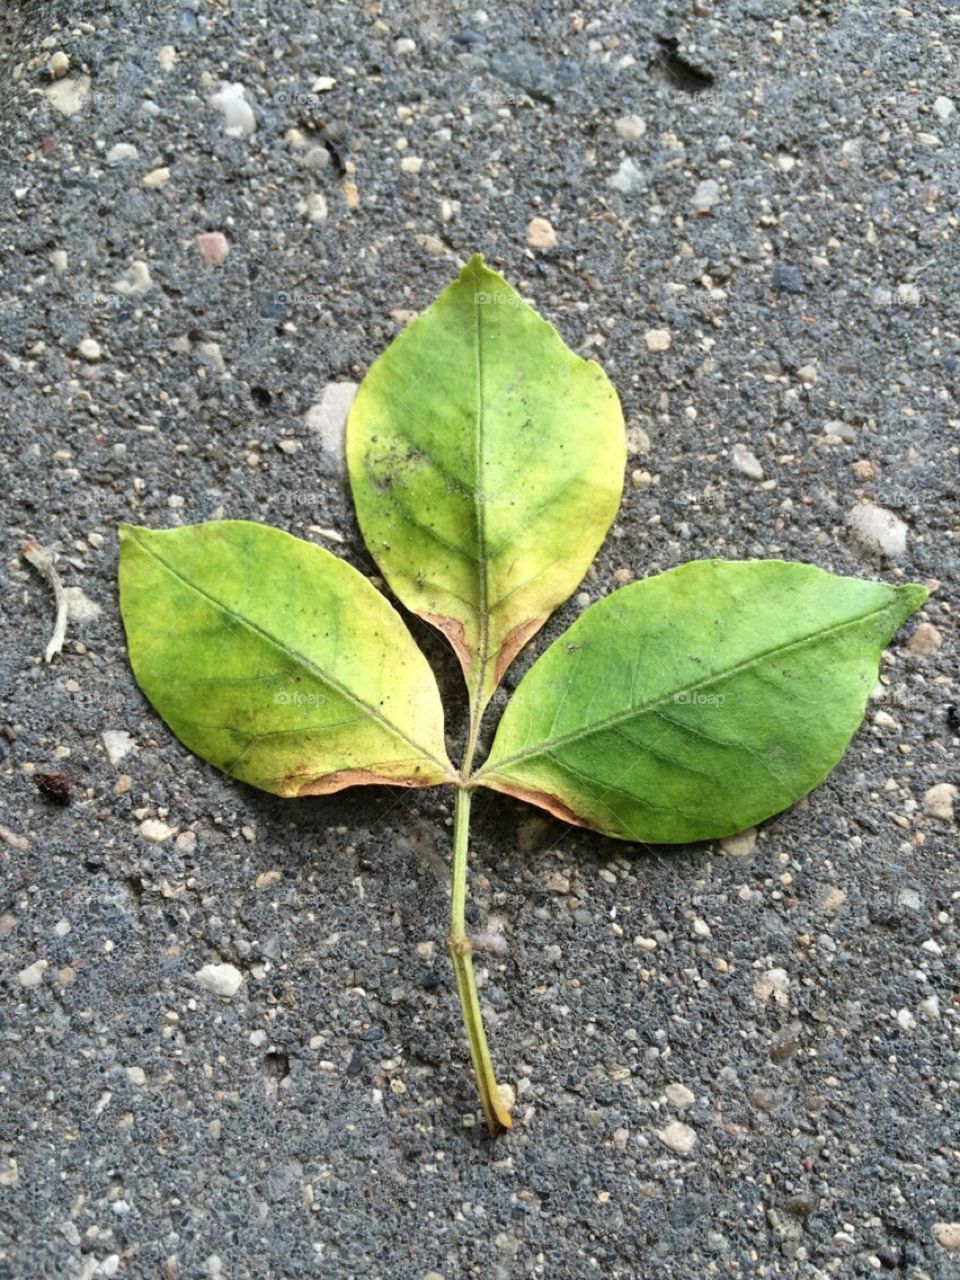 Focusing on a leaf 